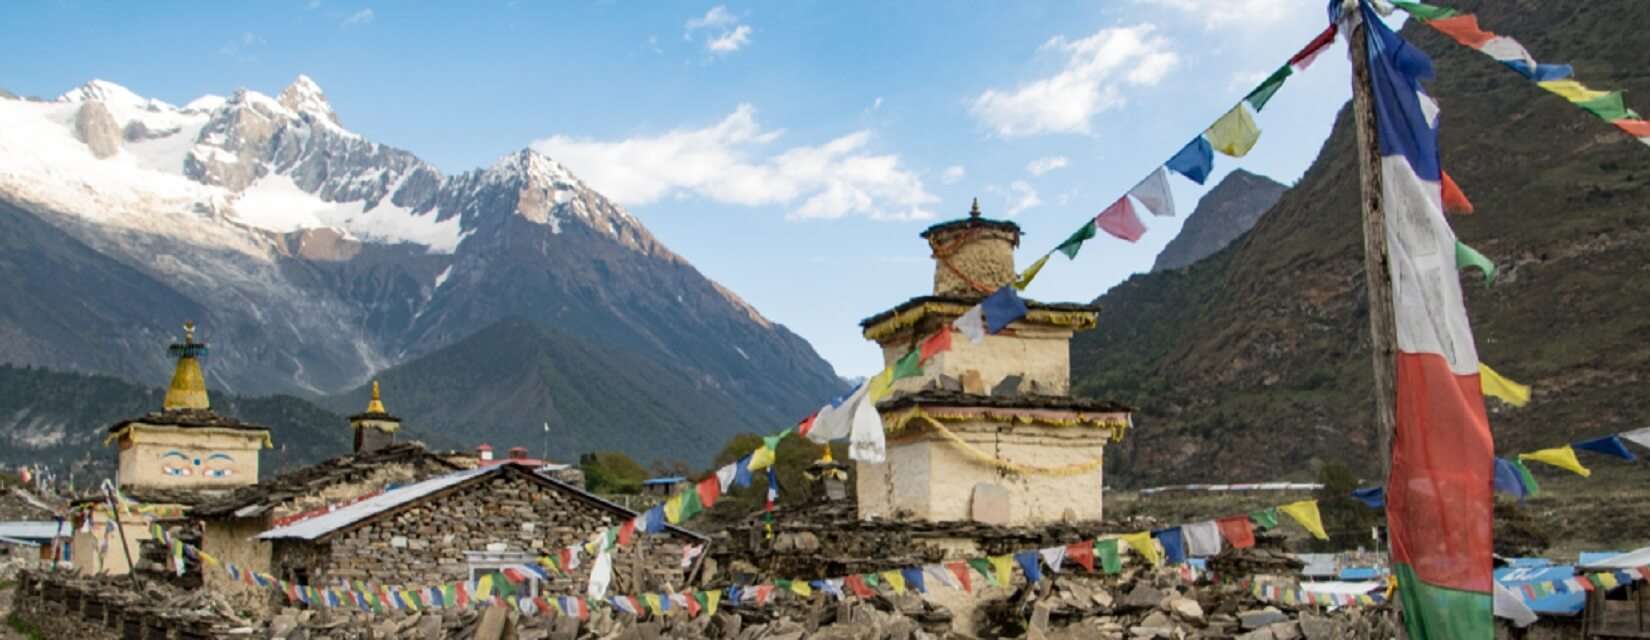 Hidden Trekking Trail Nepal